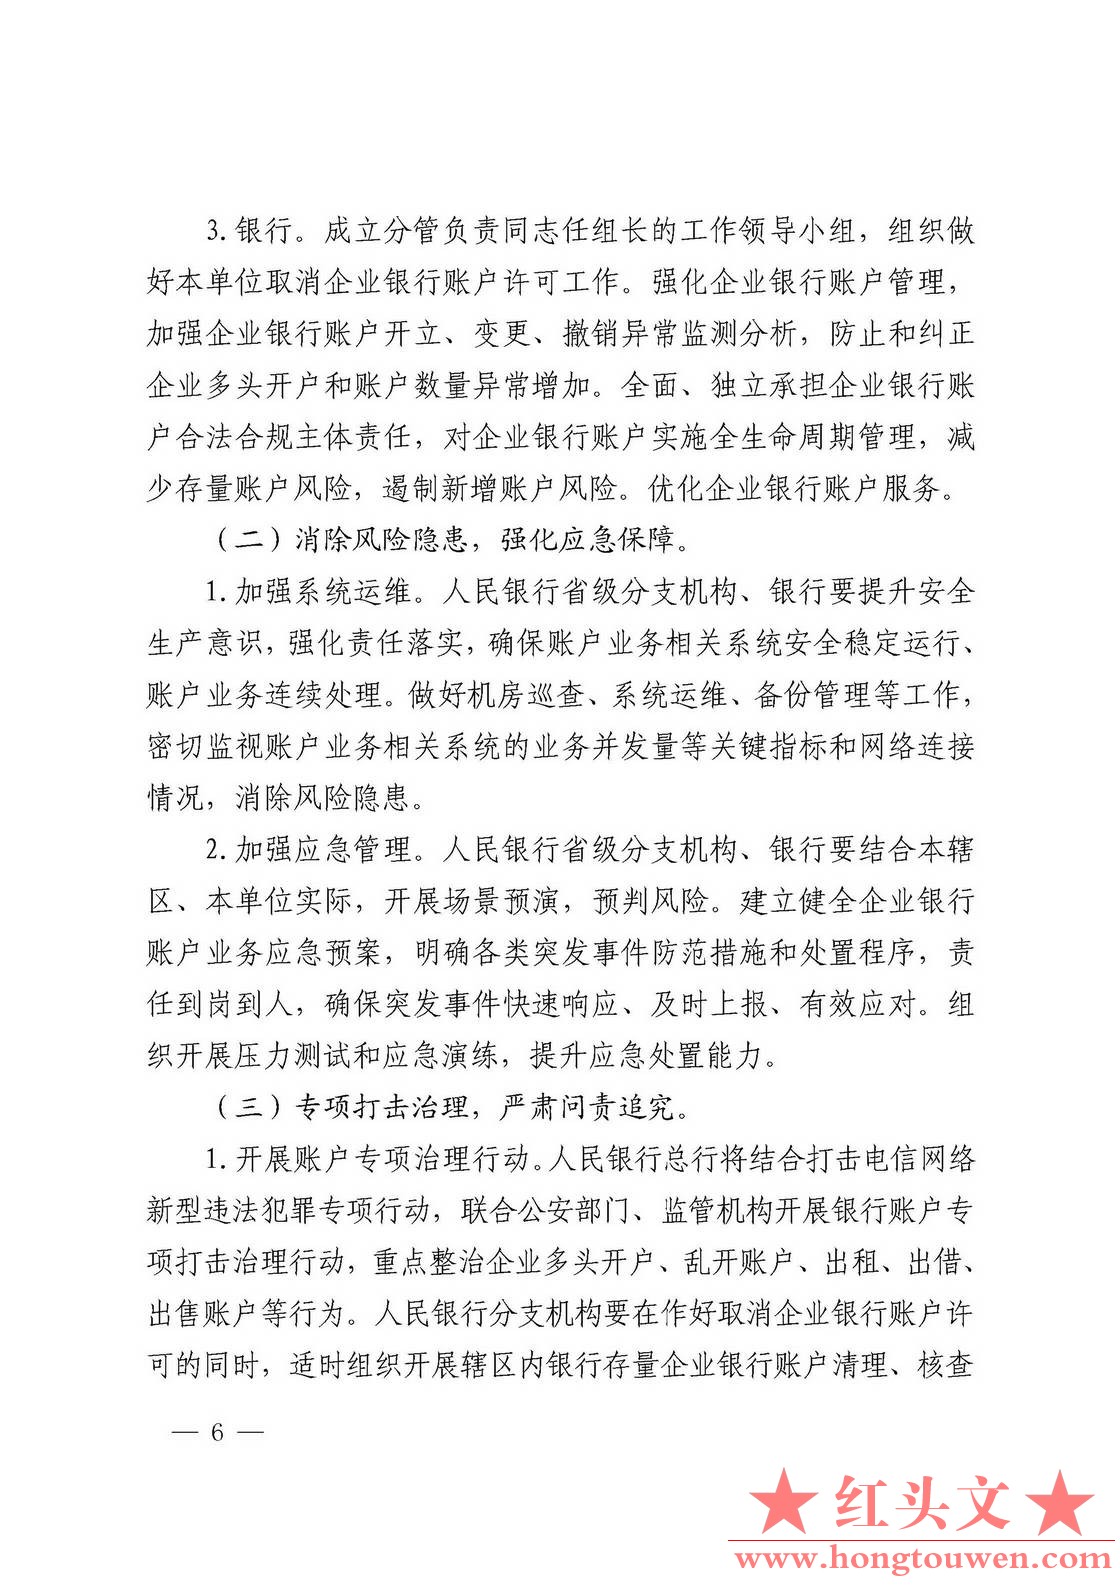 银发[2019]41号-中国人民银行关于取消企业银行账户许可的通知_页面_06.jpg.jpg